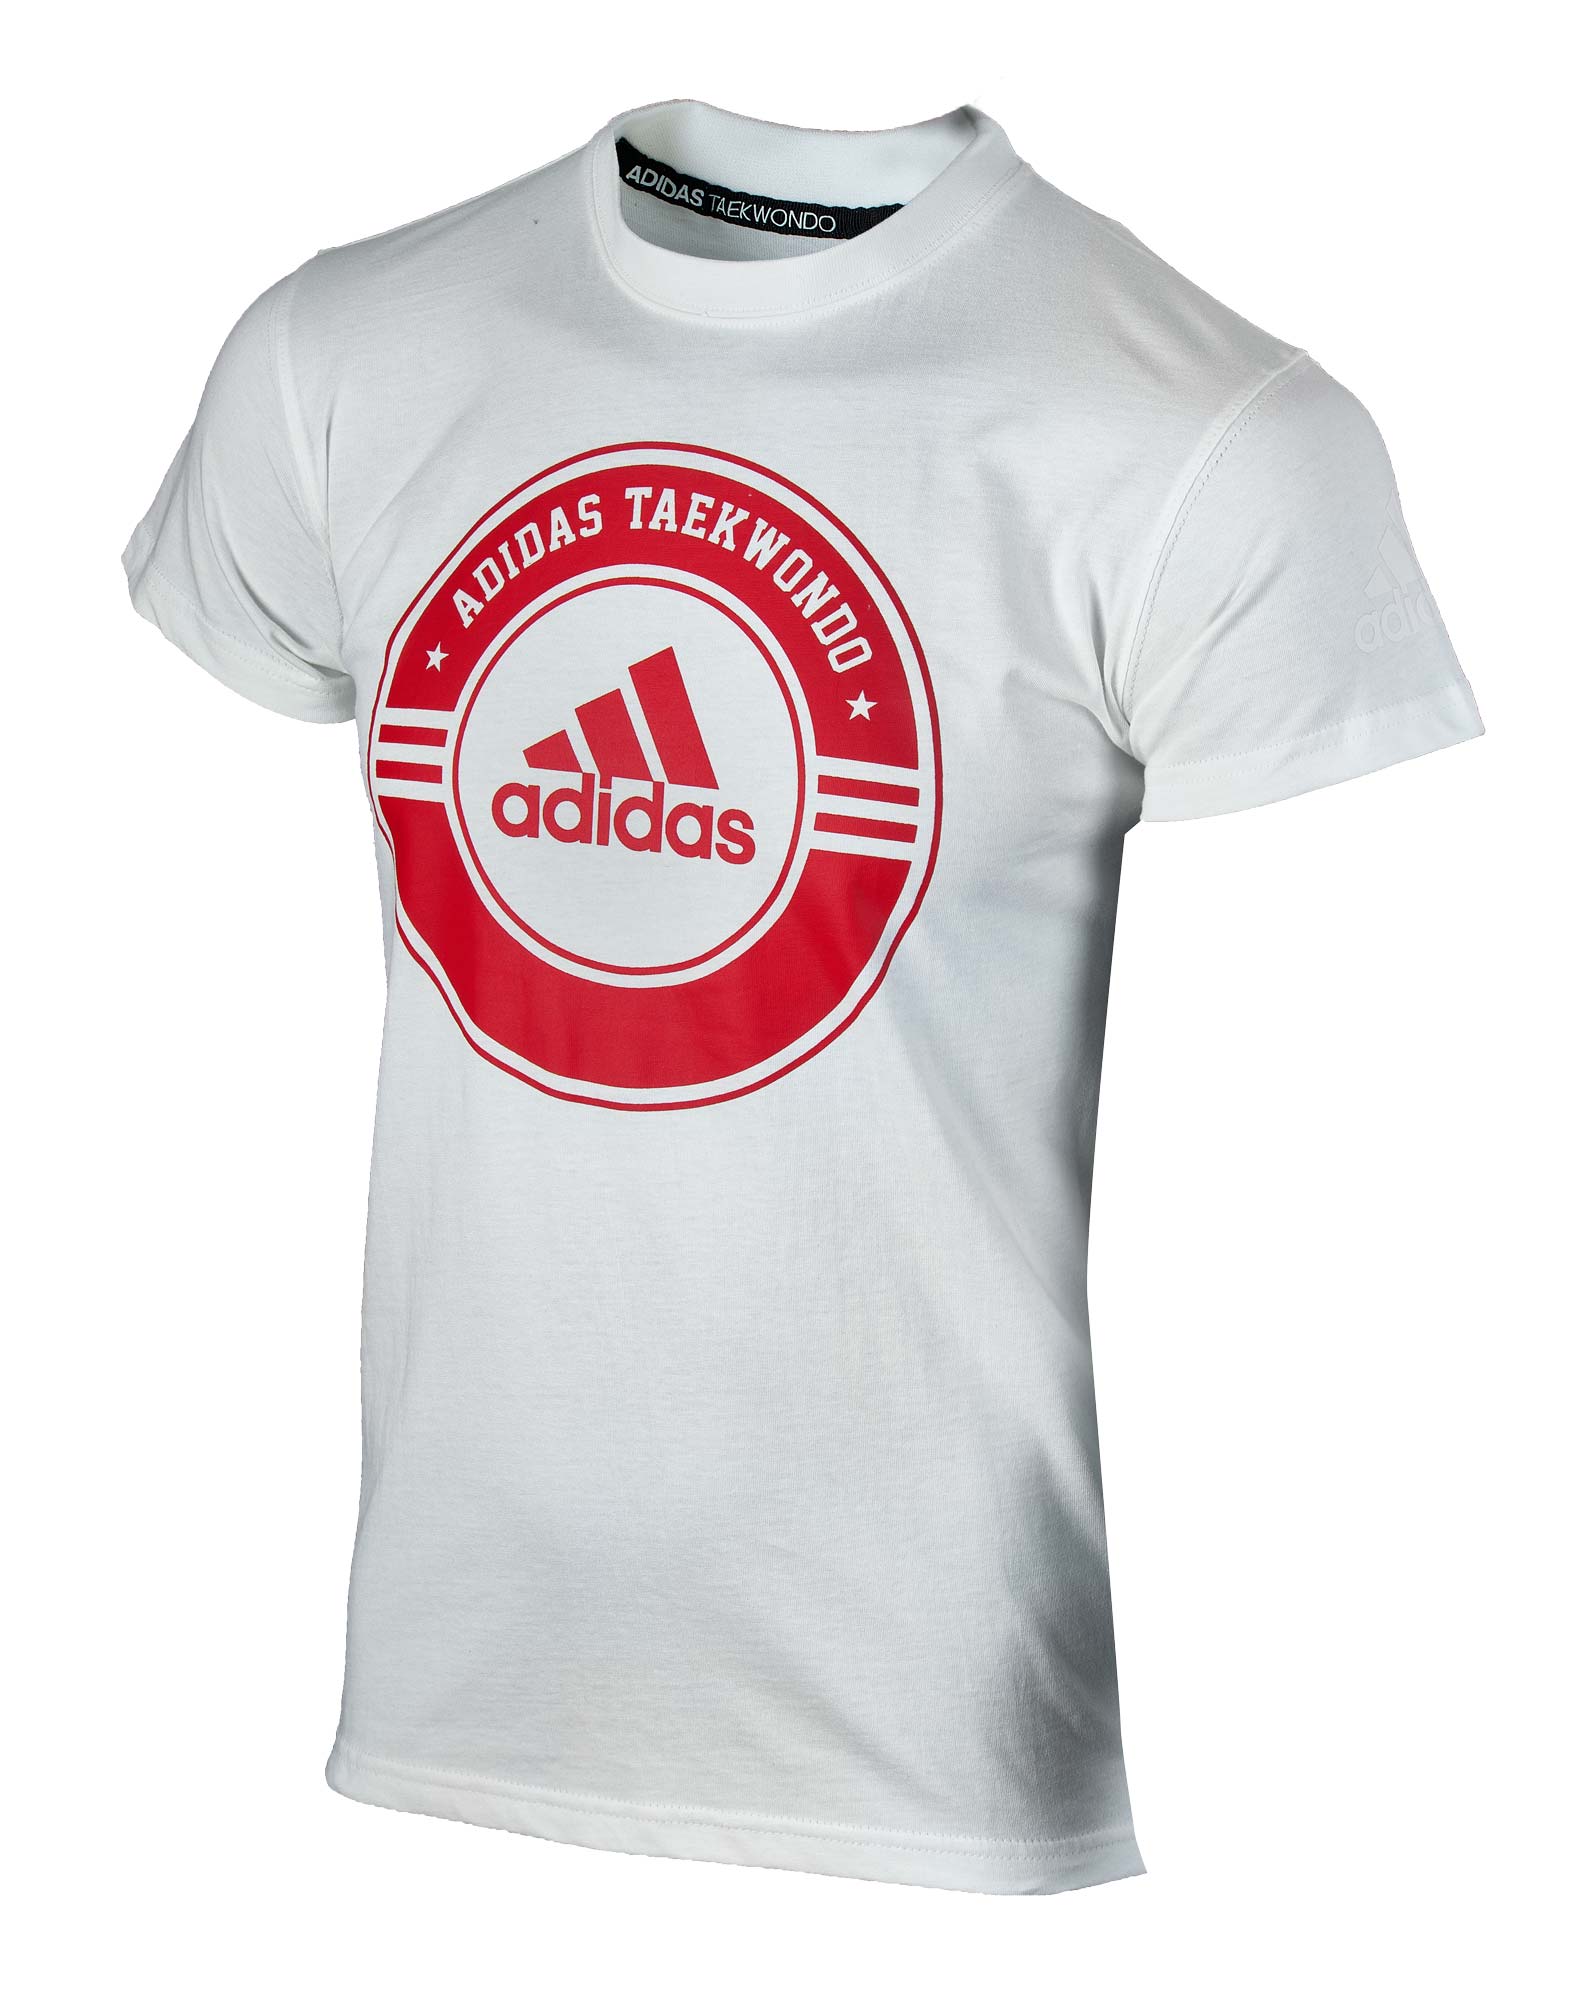 adidas Community Line T-Shirt Taekwondo Circle adicsts01T white/red